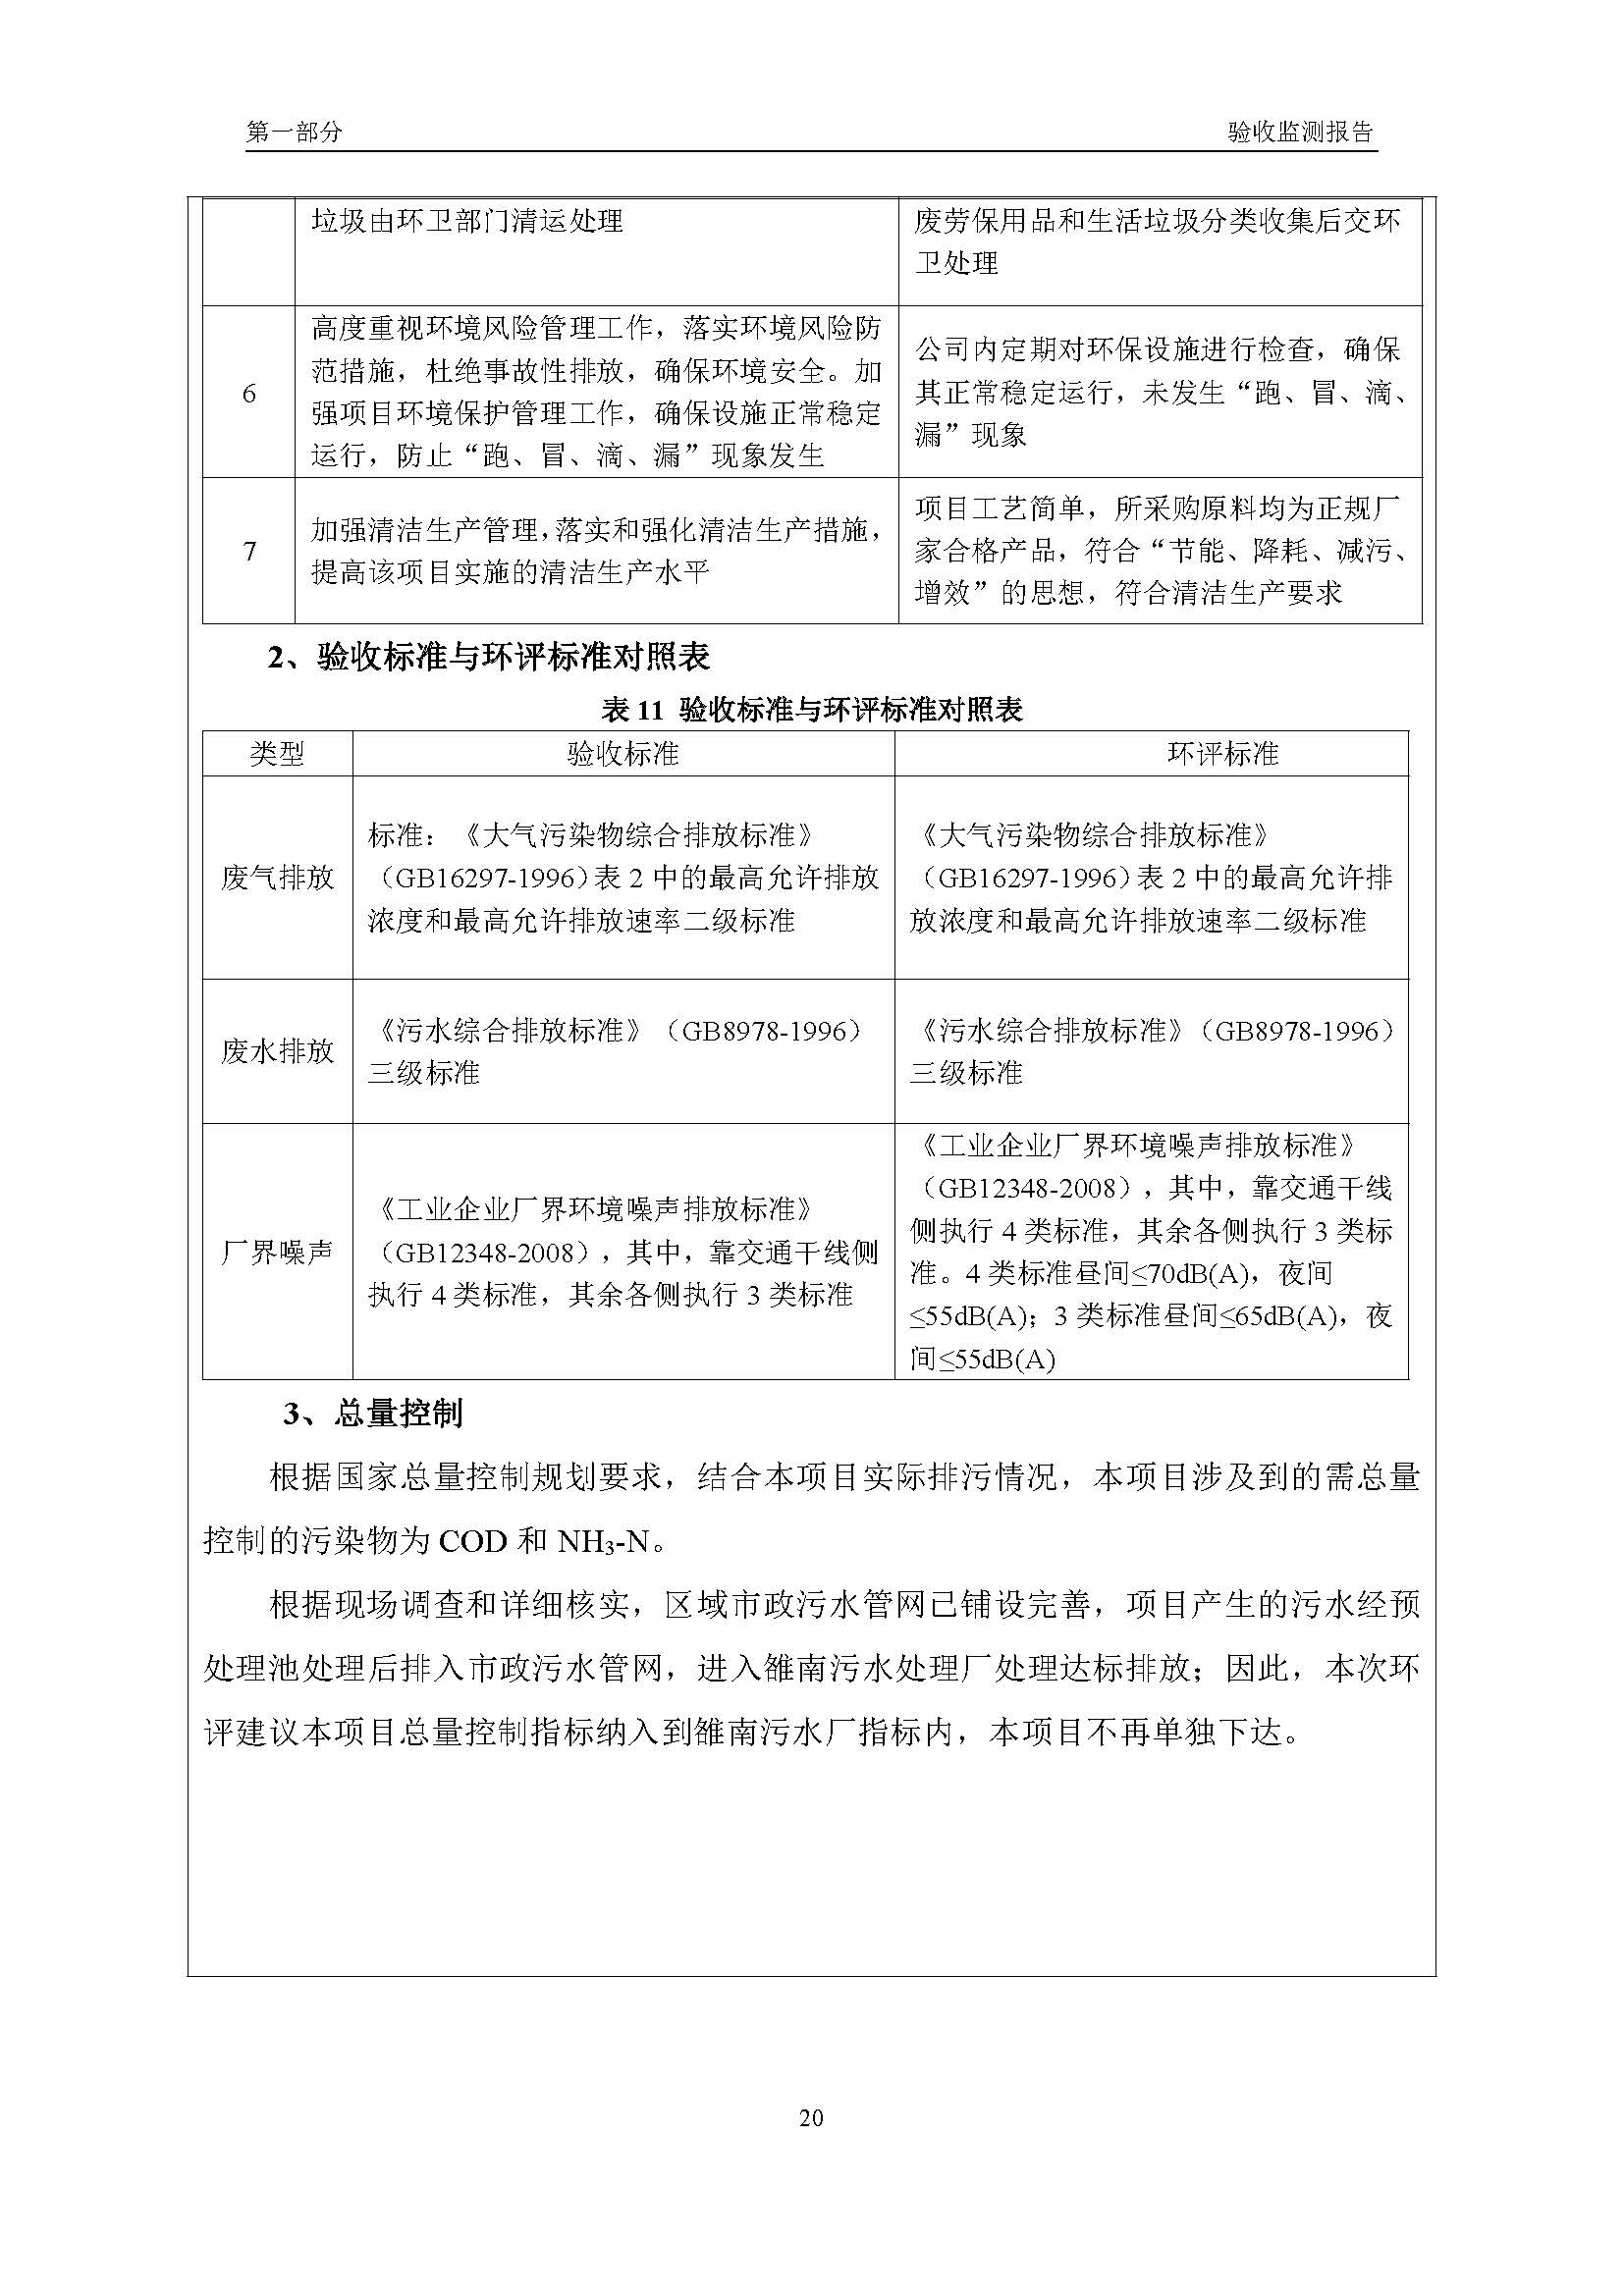 汉正检测环评验收报告 2018.05.31_页面_22.jpg